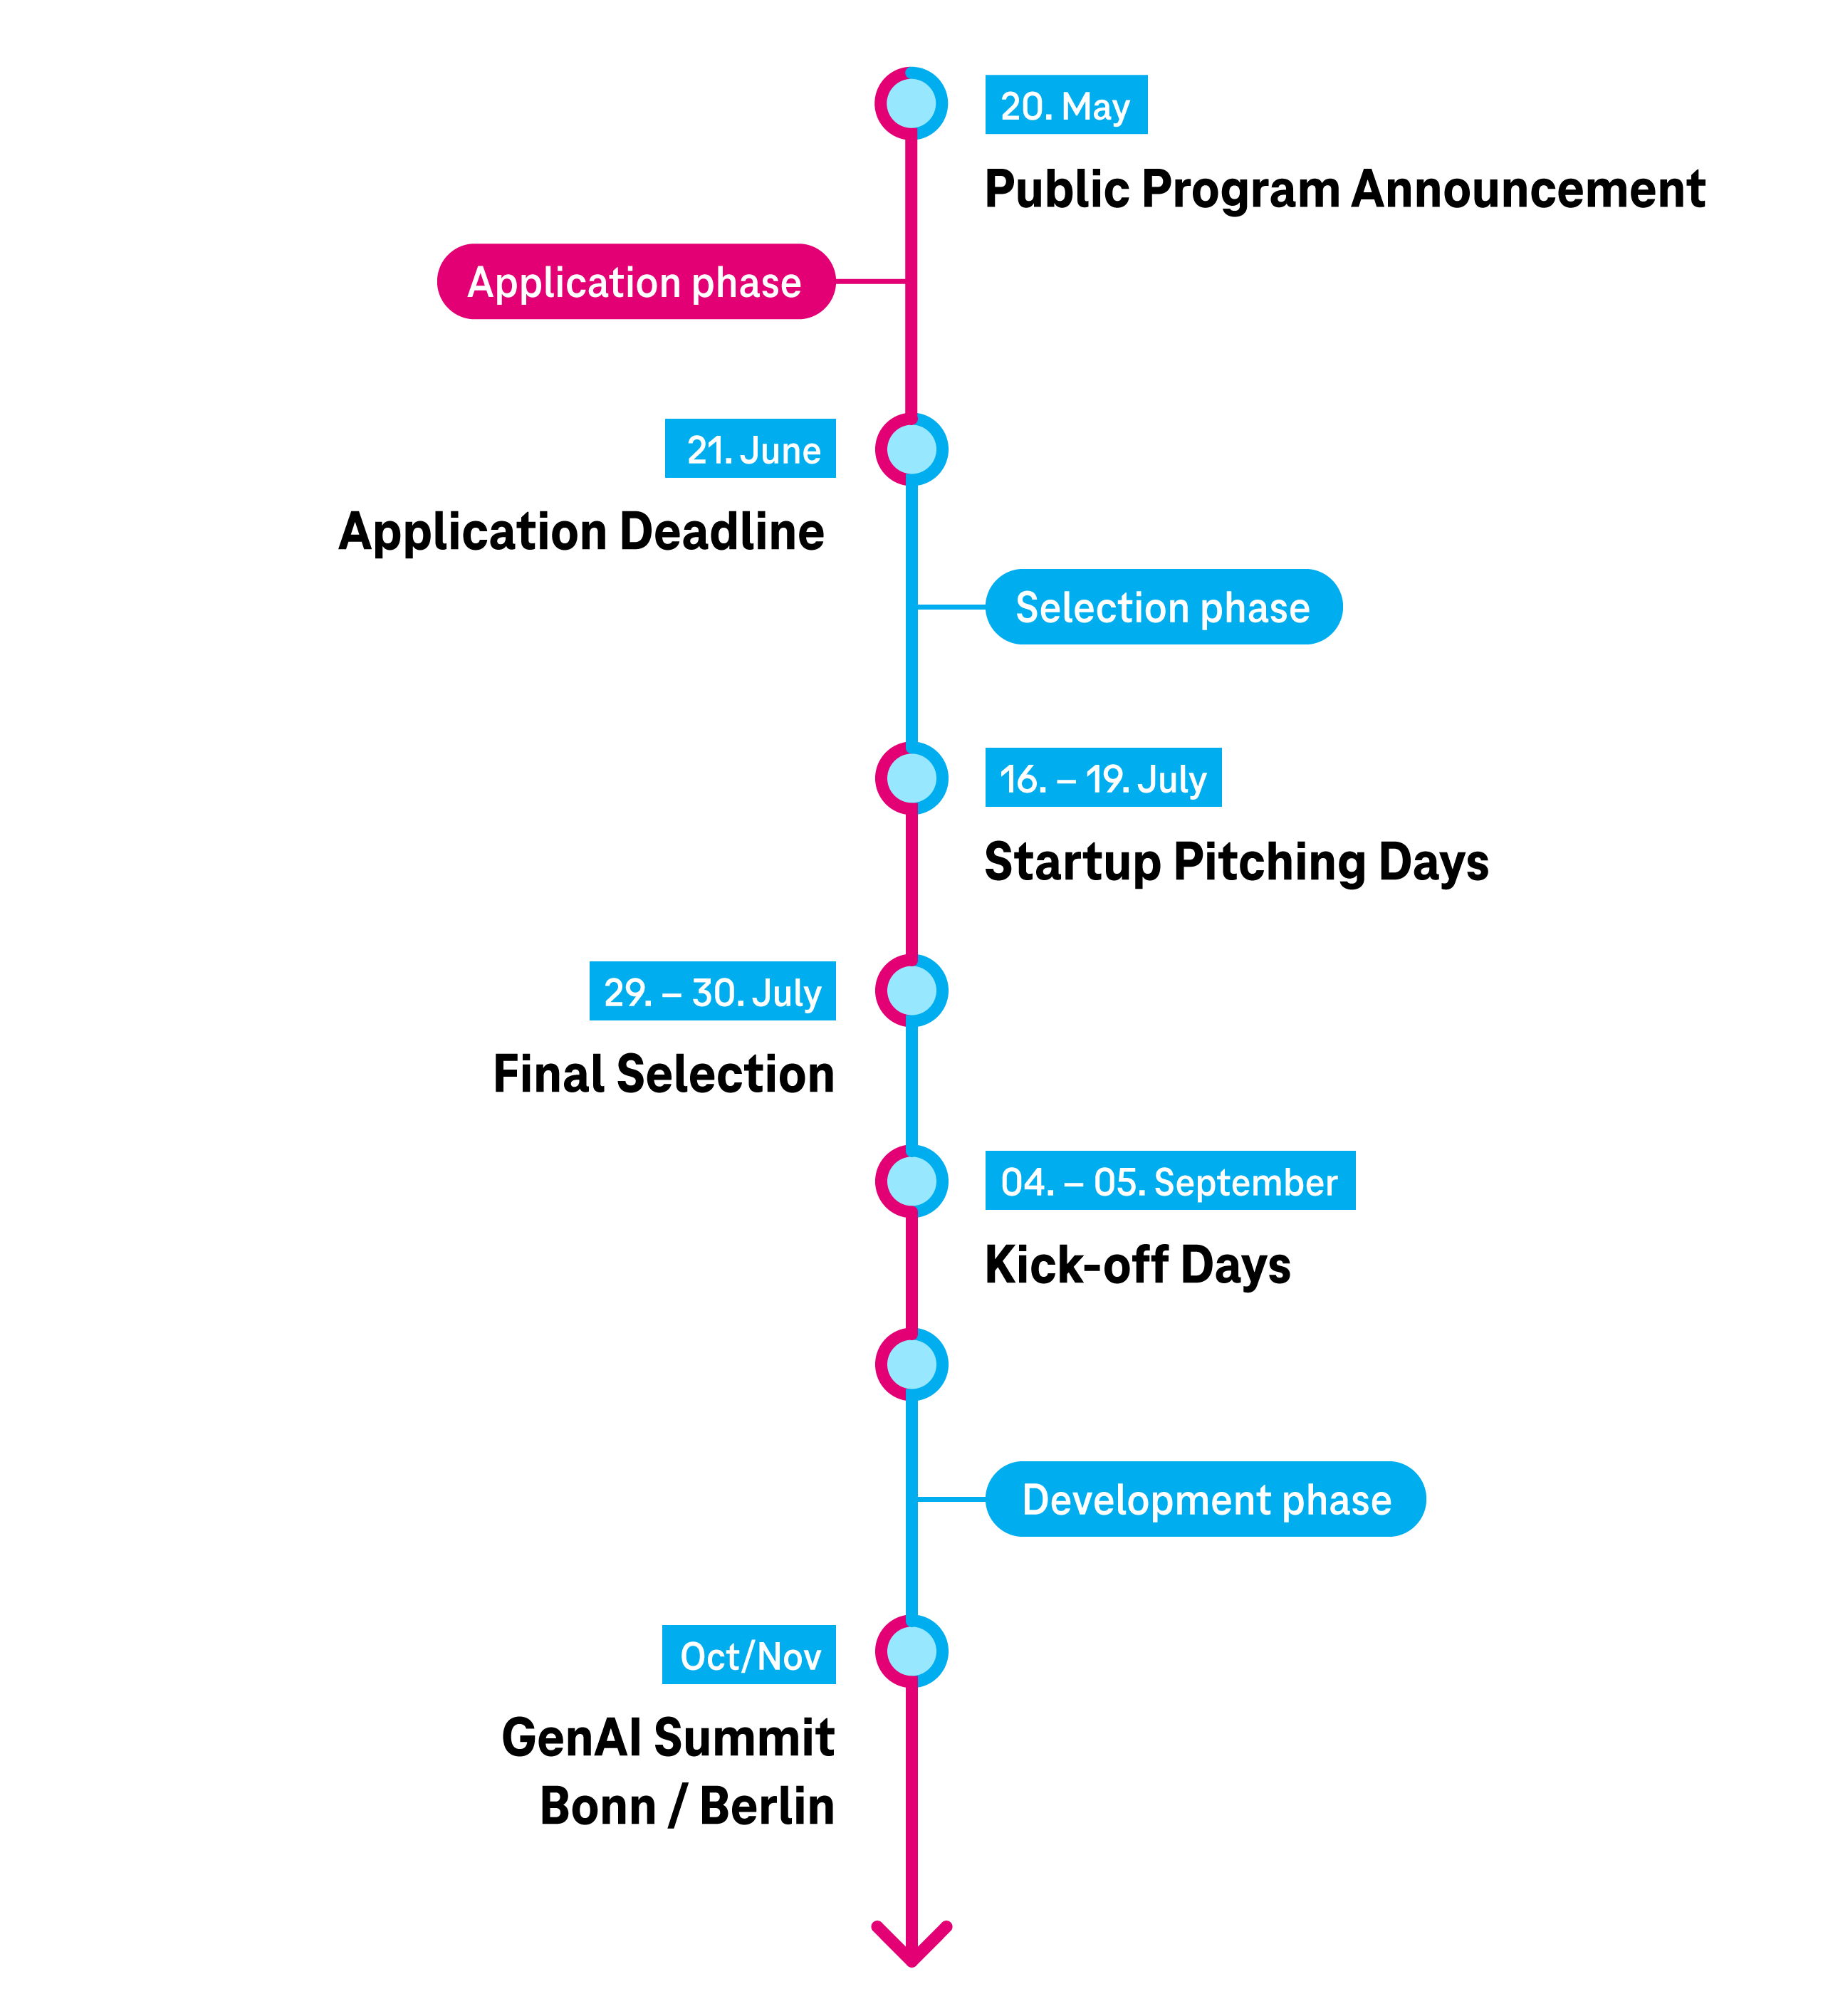 Timeline of the program